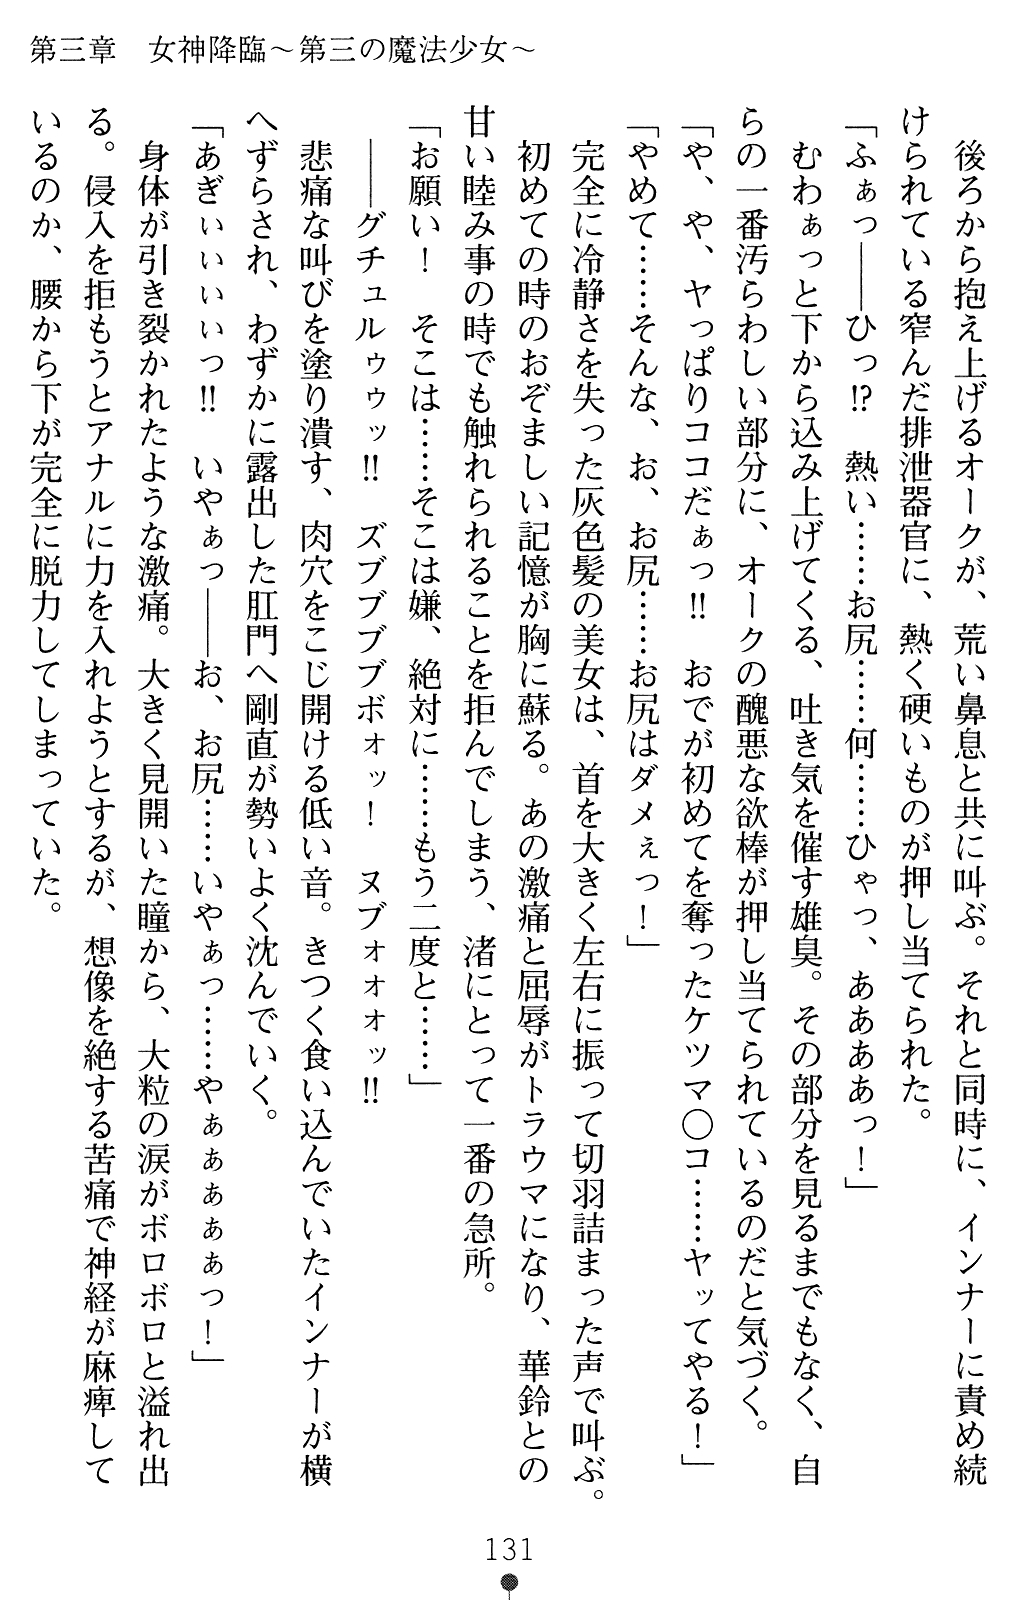 [Chris Tina, Midorigi Mura] Mahou Shoujo Angelic Karin 2 130